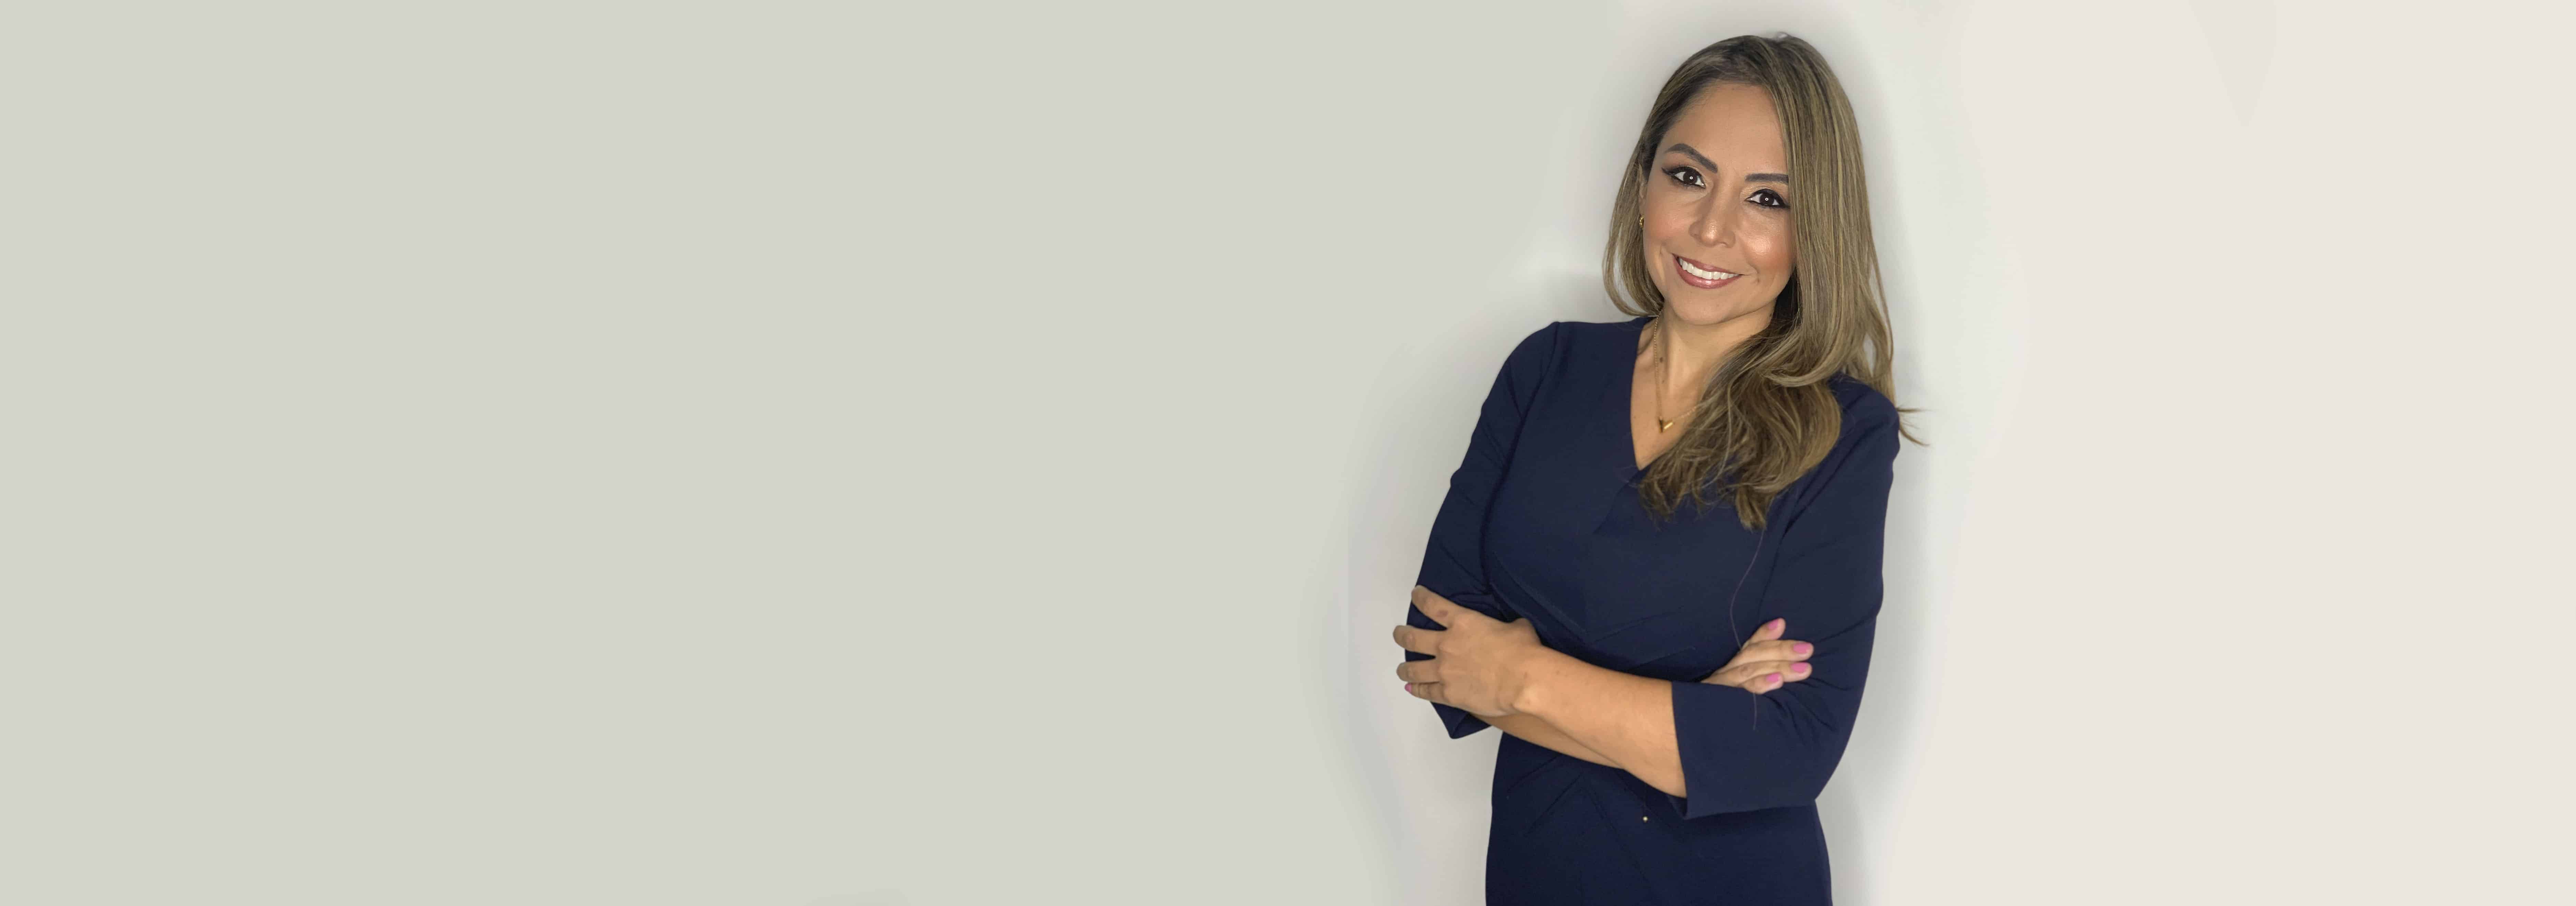 Vanessa Gamboa es la nueva Gerente General de SAP Perú